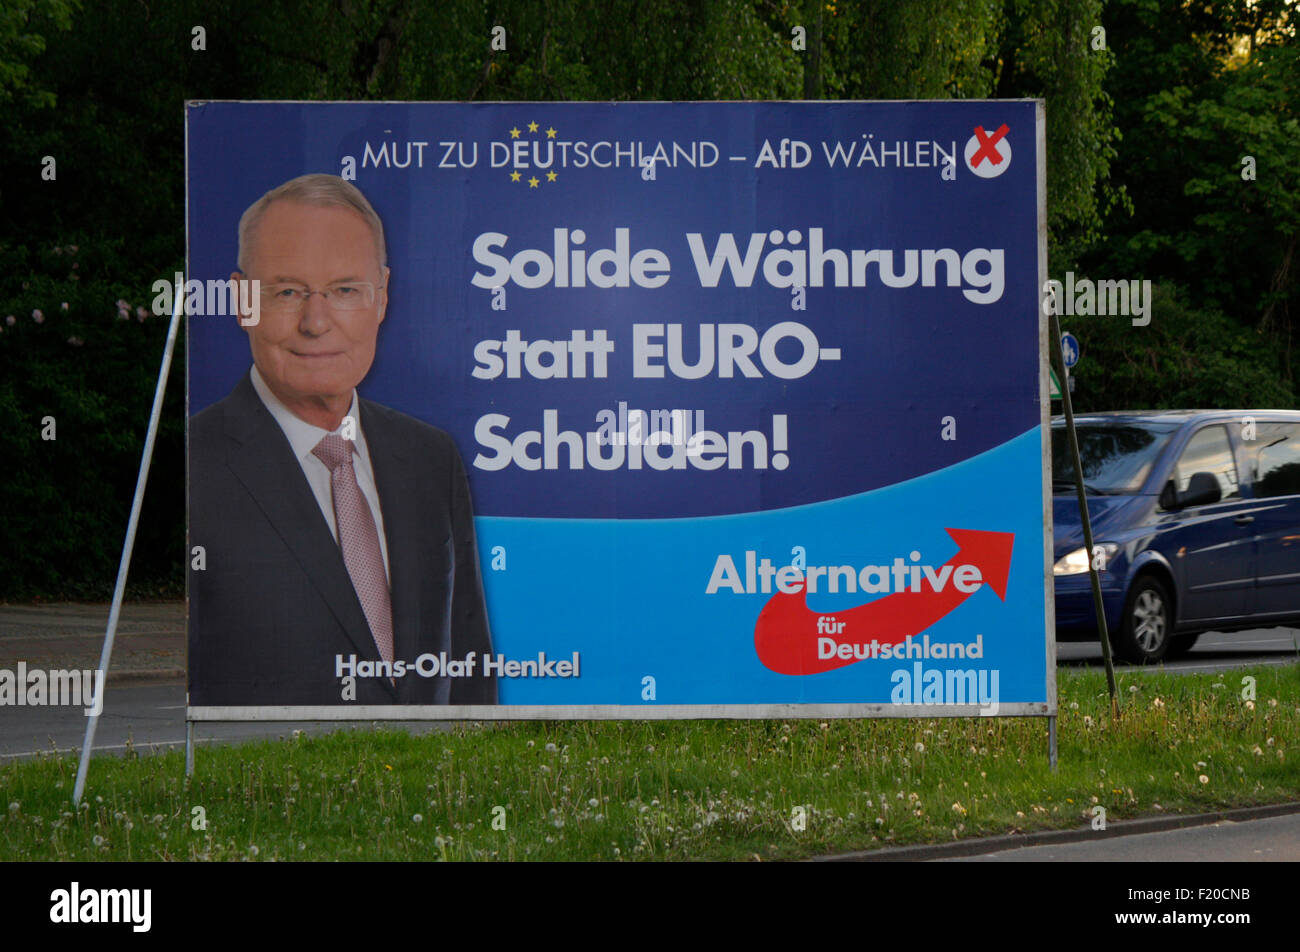 'Solide Waehrung statt Euro Schulden', Olaf Henkel, Alternative fuer Deutschland  - Wahlplakate zur anstehenden Europawahl, Berl Stock Photo